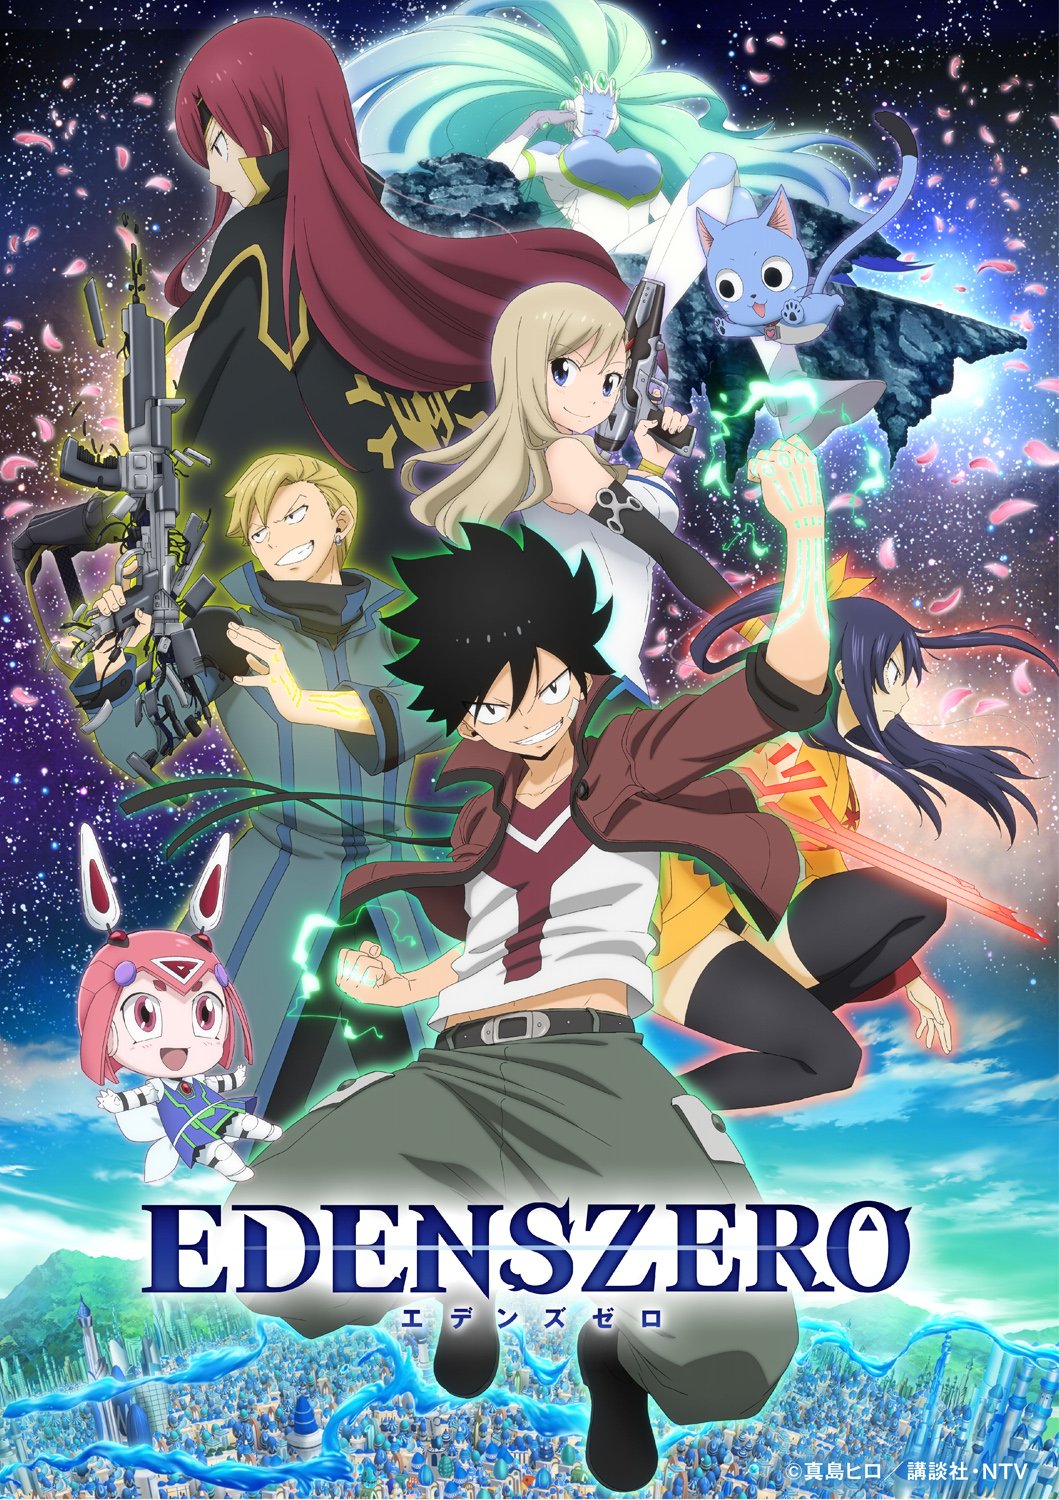 Edens Zero Reveals Celestial Key Visual & New Cast for April Debut